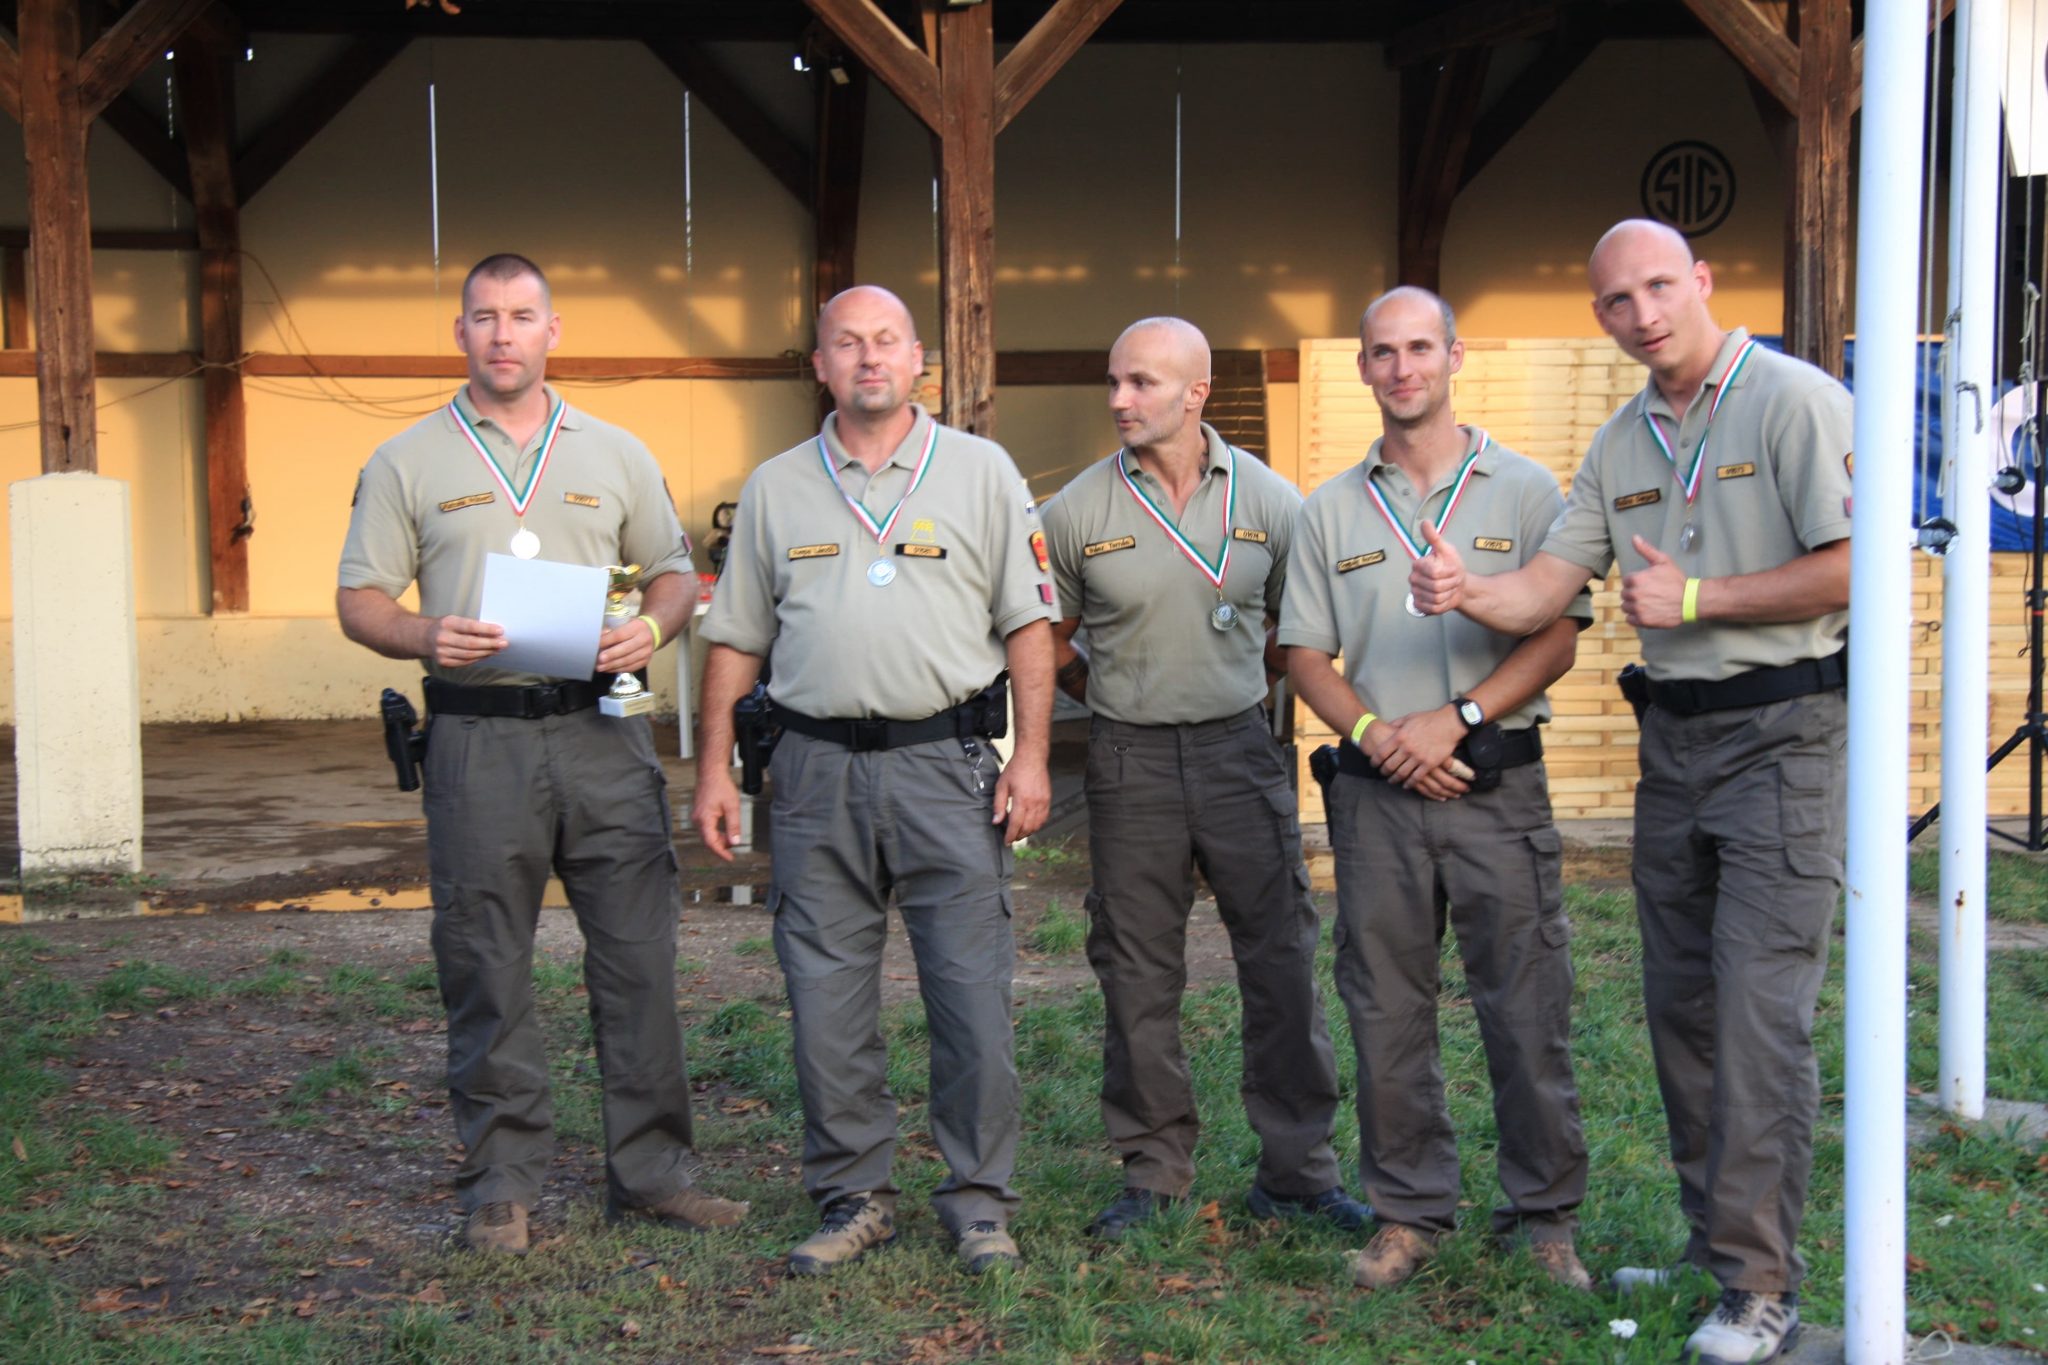 Lövészeti kategória II. helyezett Mátrai Erőmű FBŐ csapata